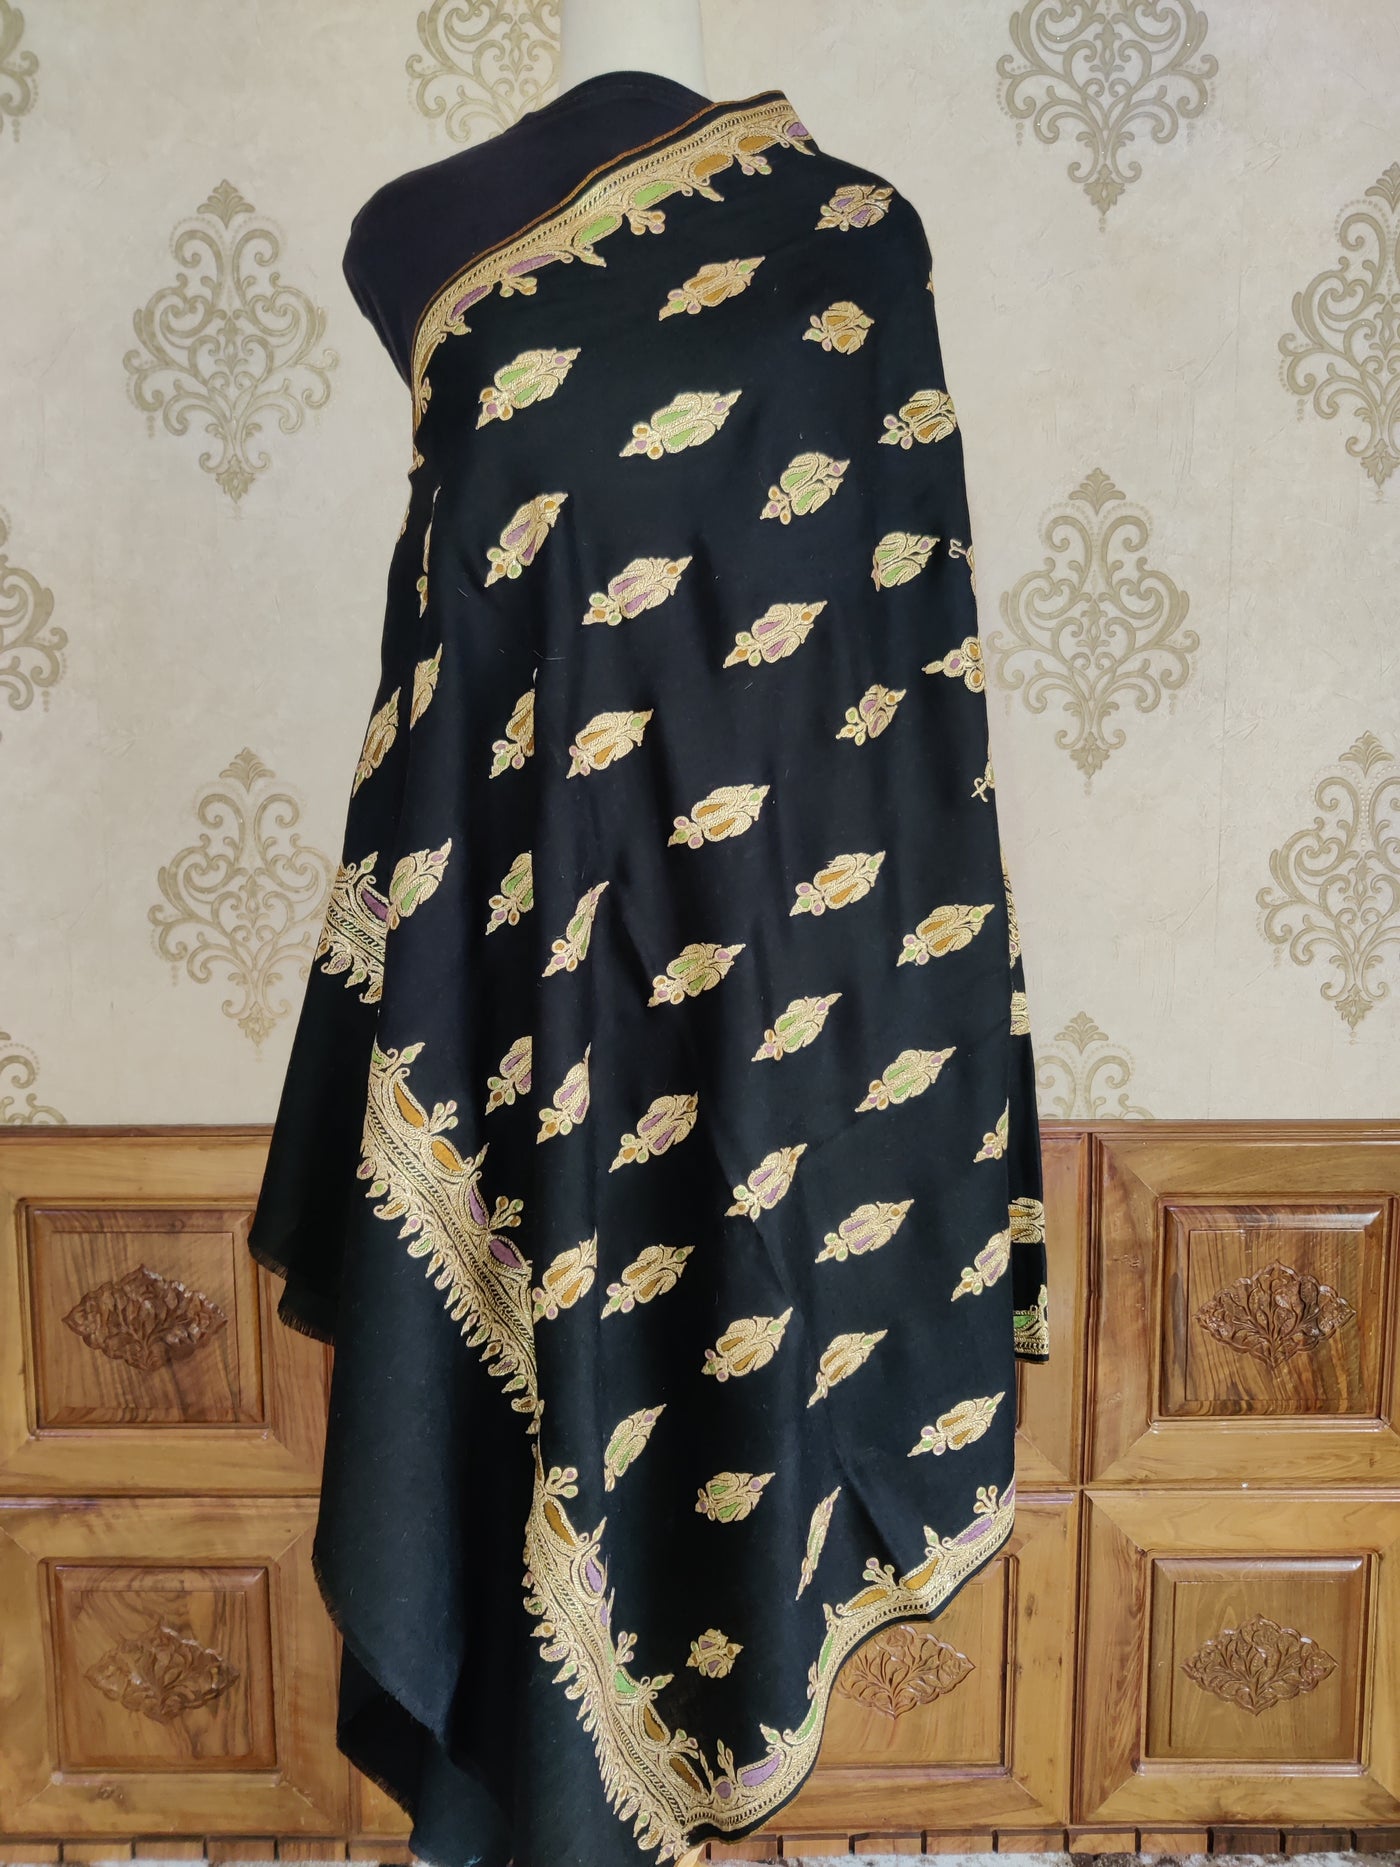 Zamurd-e-Zar Pure Pashmina Shawl with Hand Tilla and Sozni Embroidery